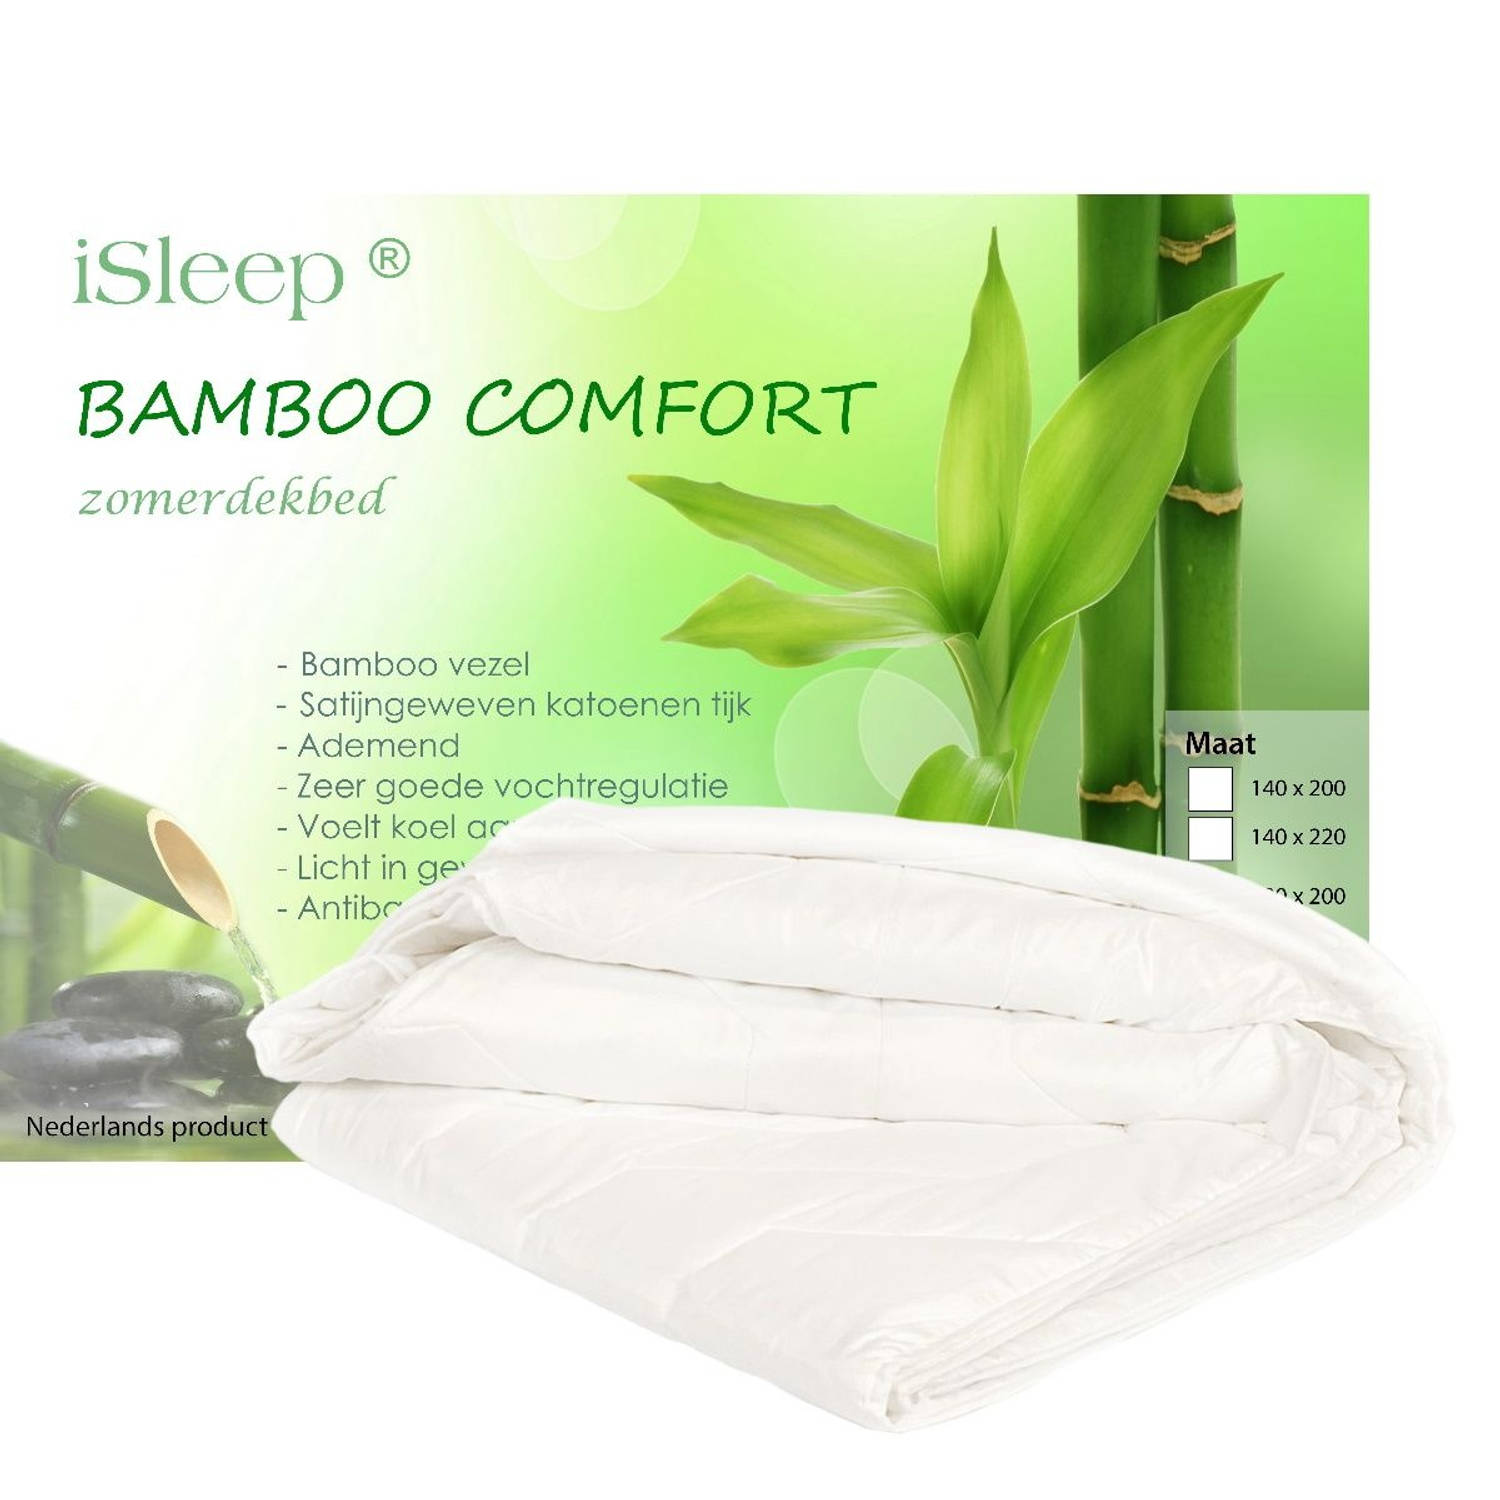 iSleep zomerdekbed Bamboo Comfort 1-Persoons 140x220 cm